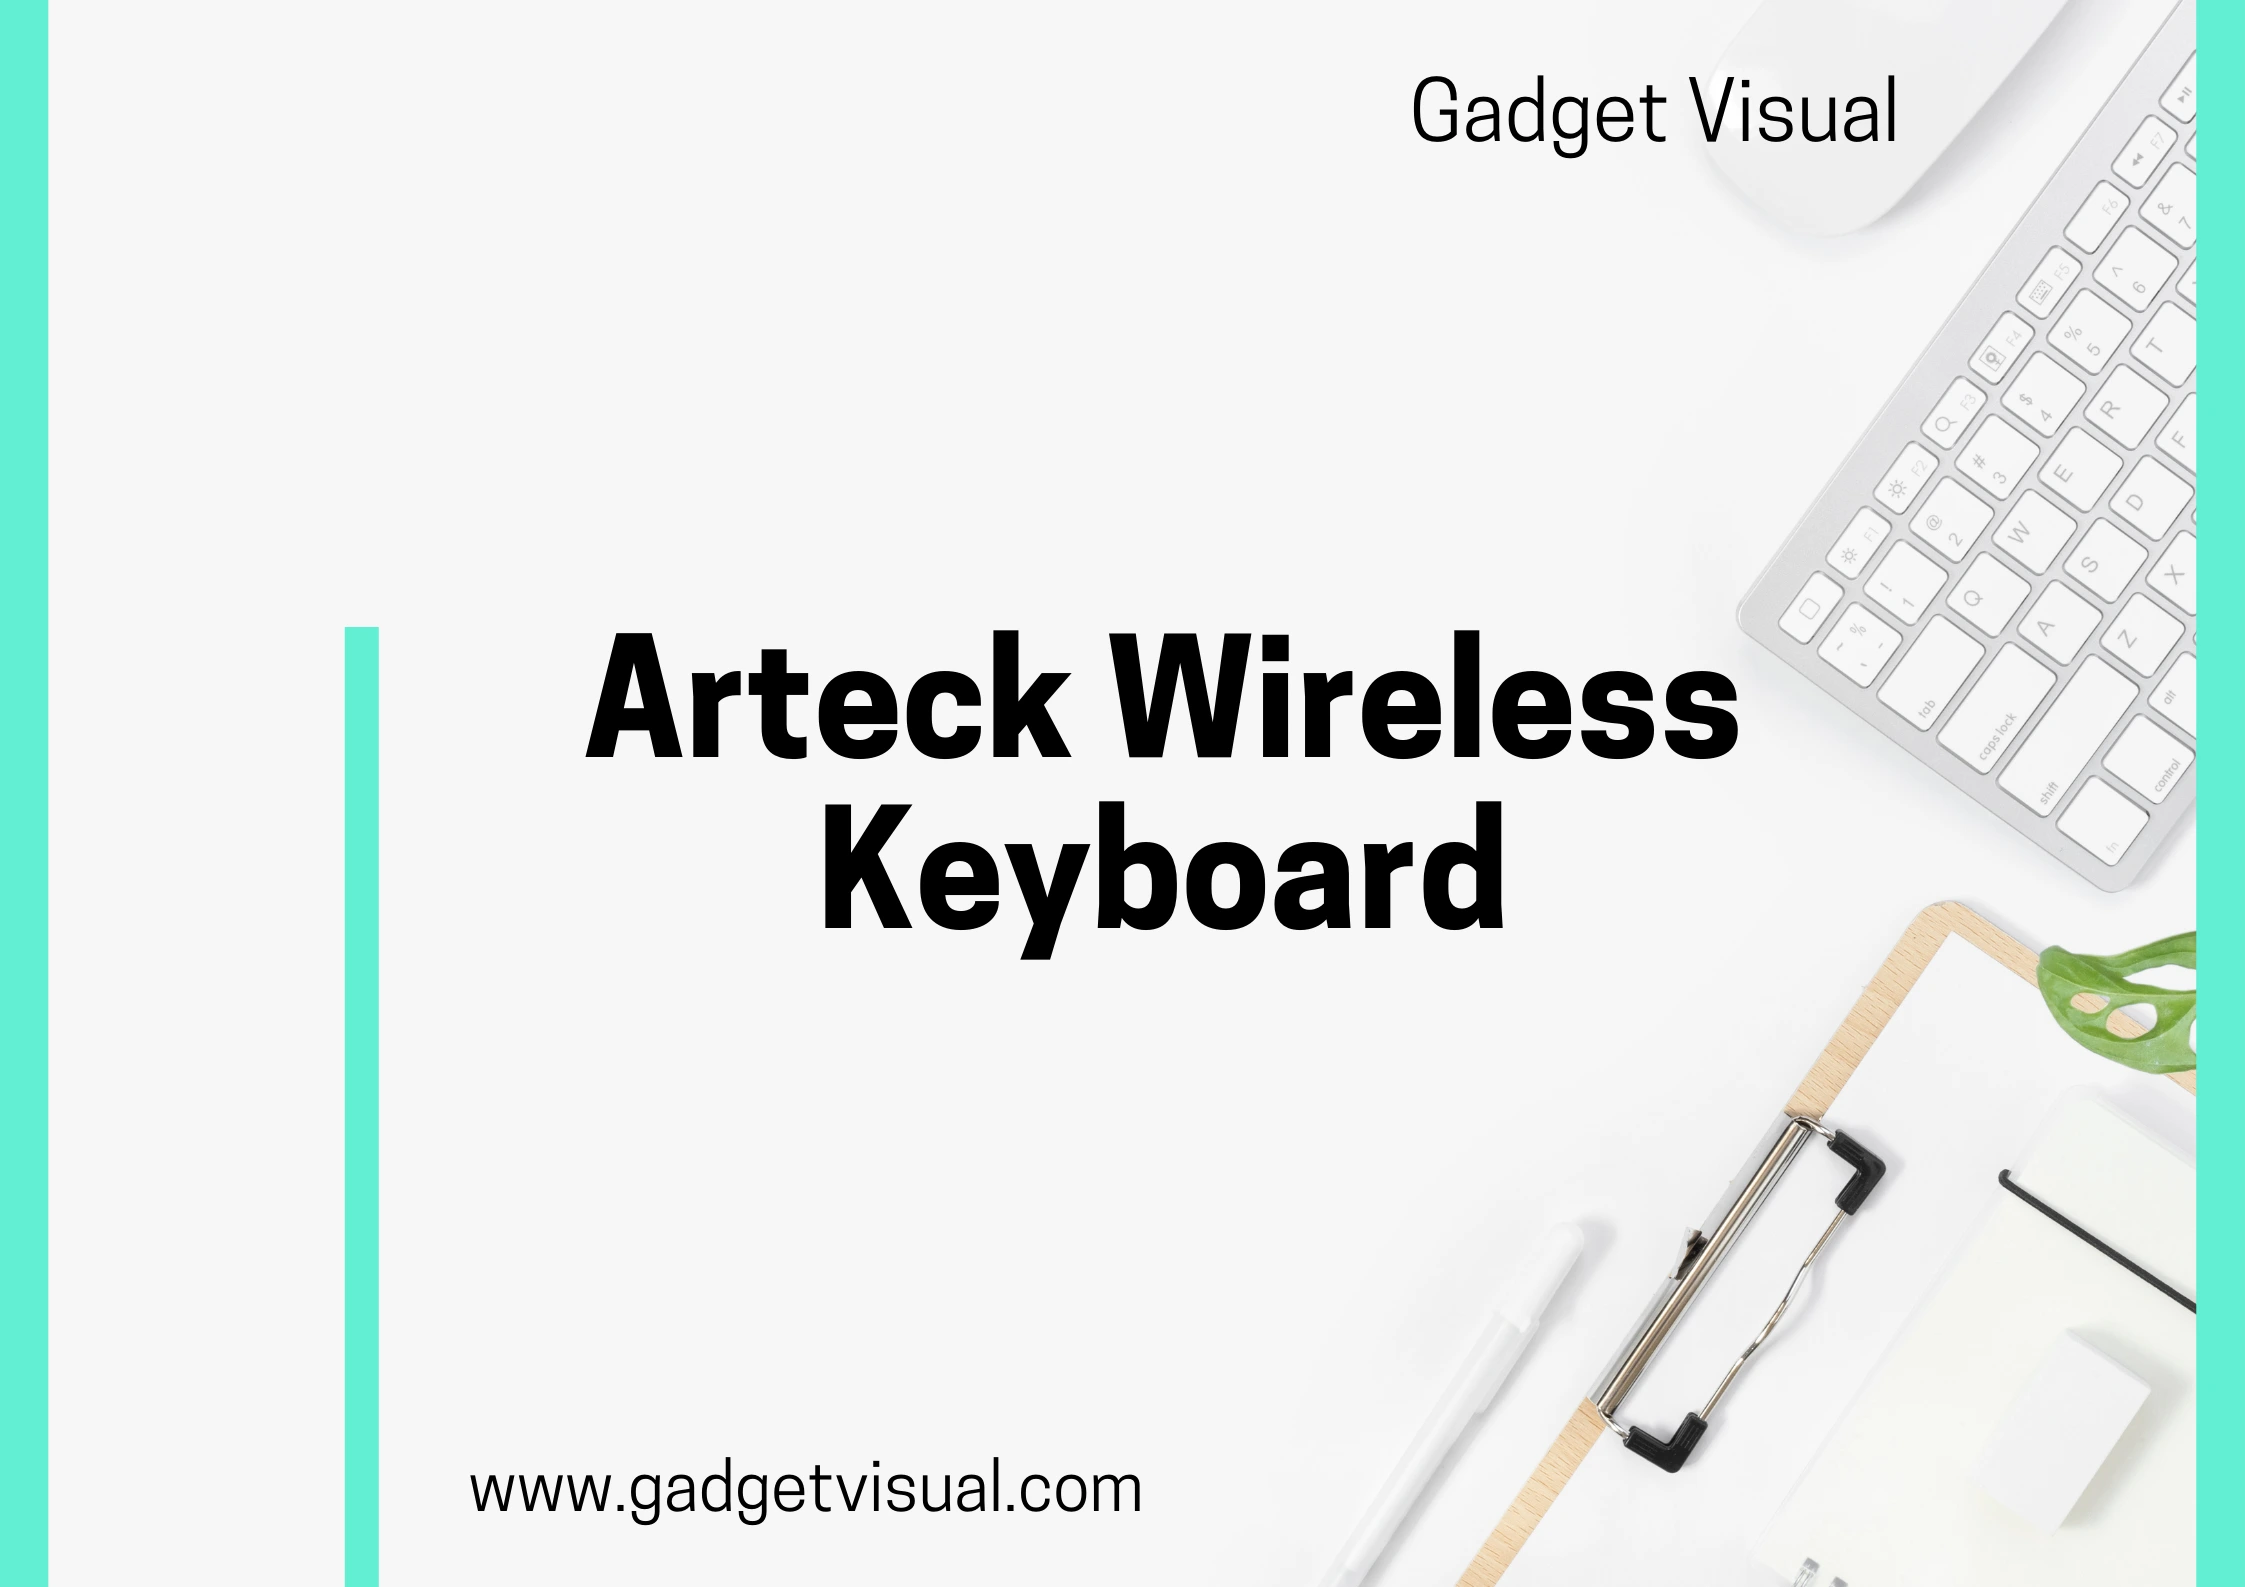 Arteck Wireless Keyboard